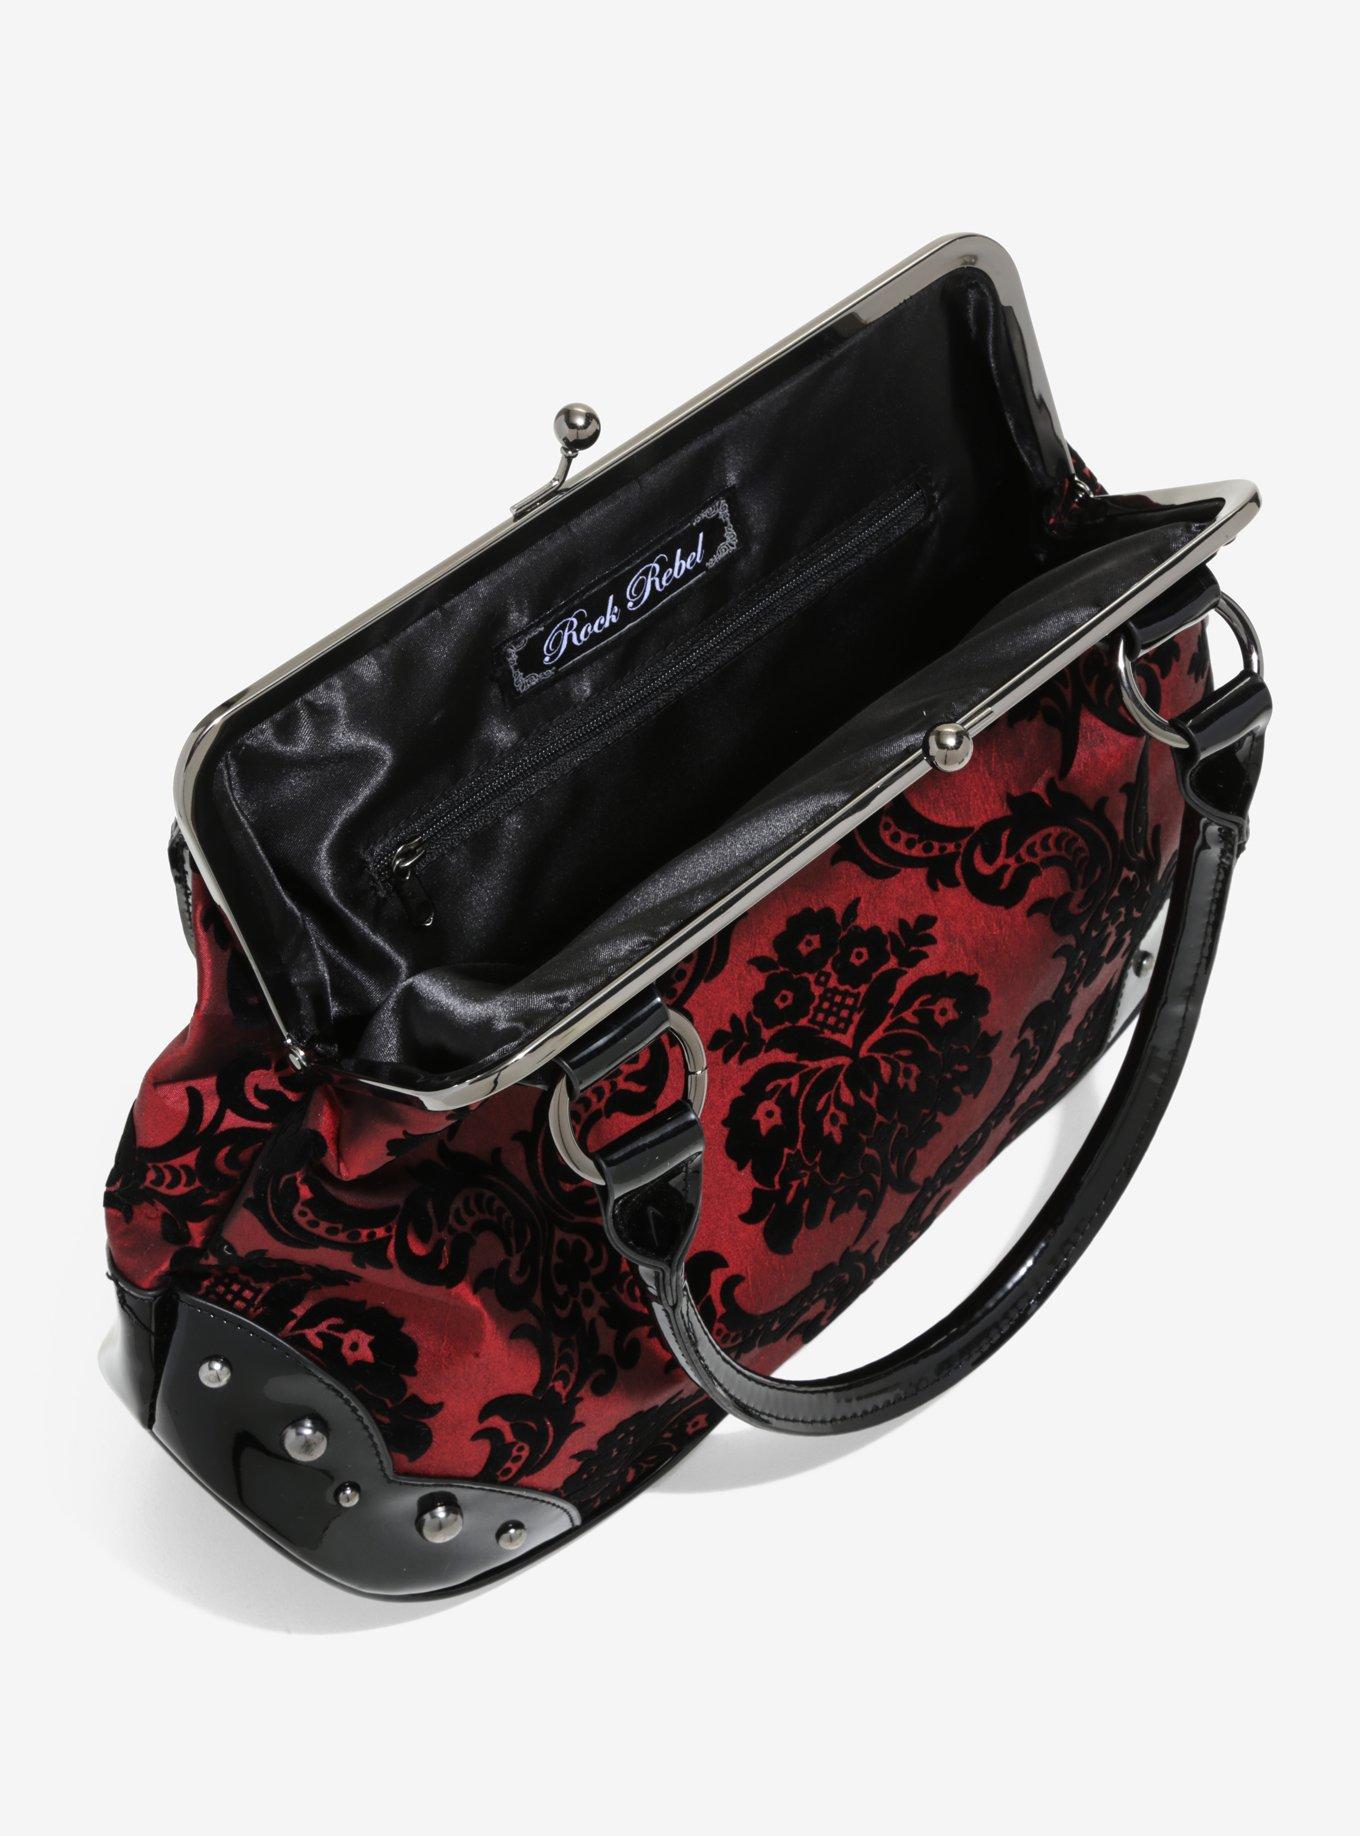 Rock Rebel – Mistress Midnight GG Rose Victorian Damask Handbag – Get it  Vegan